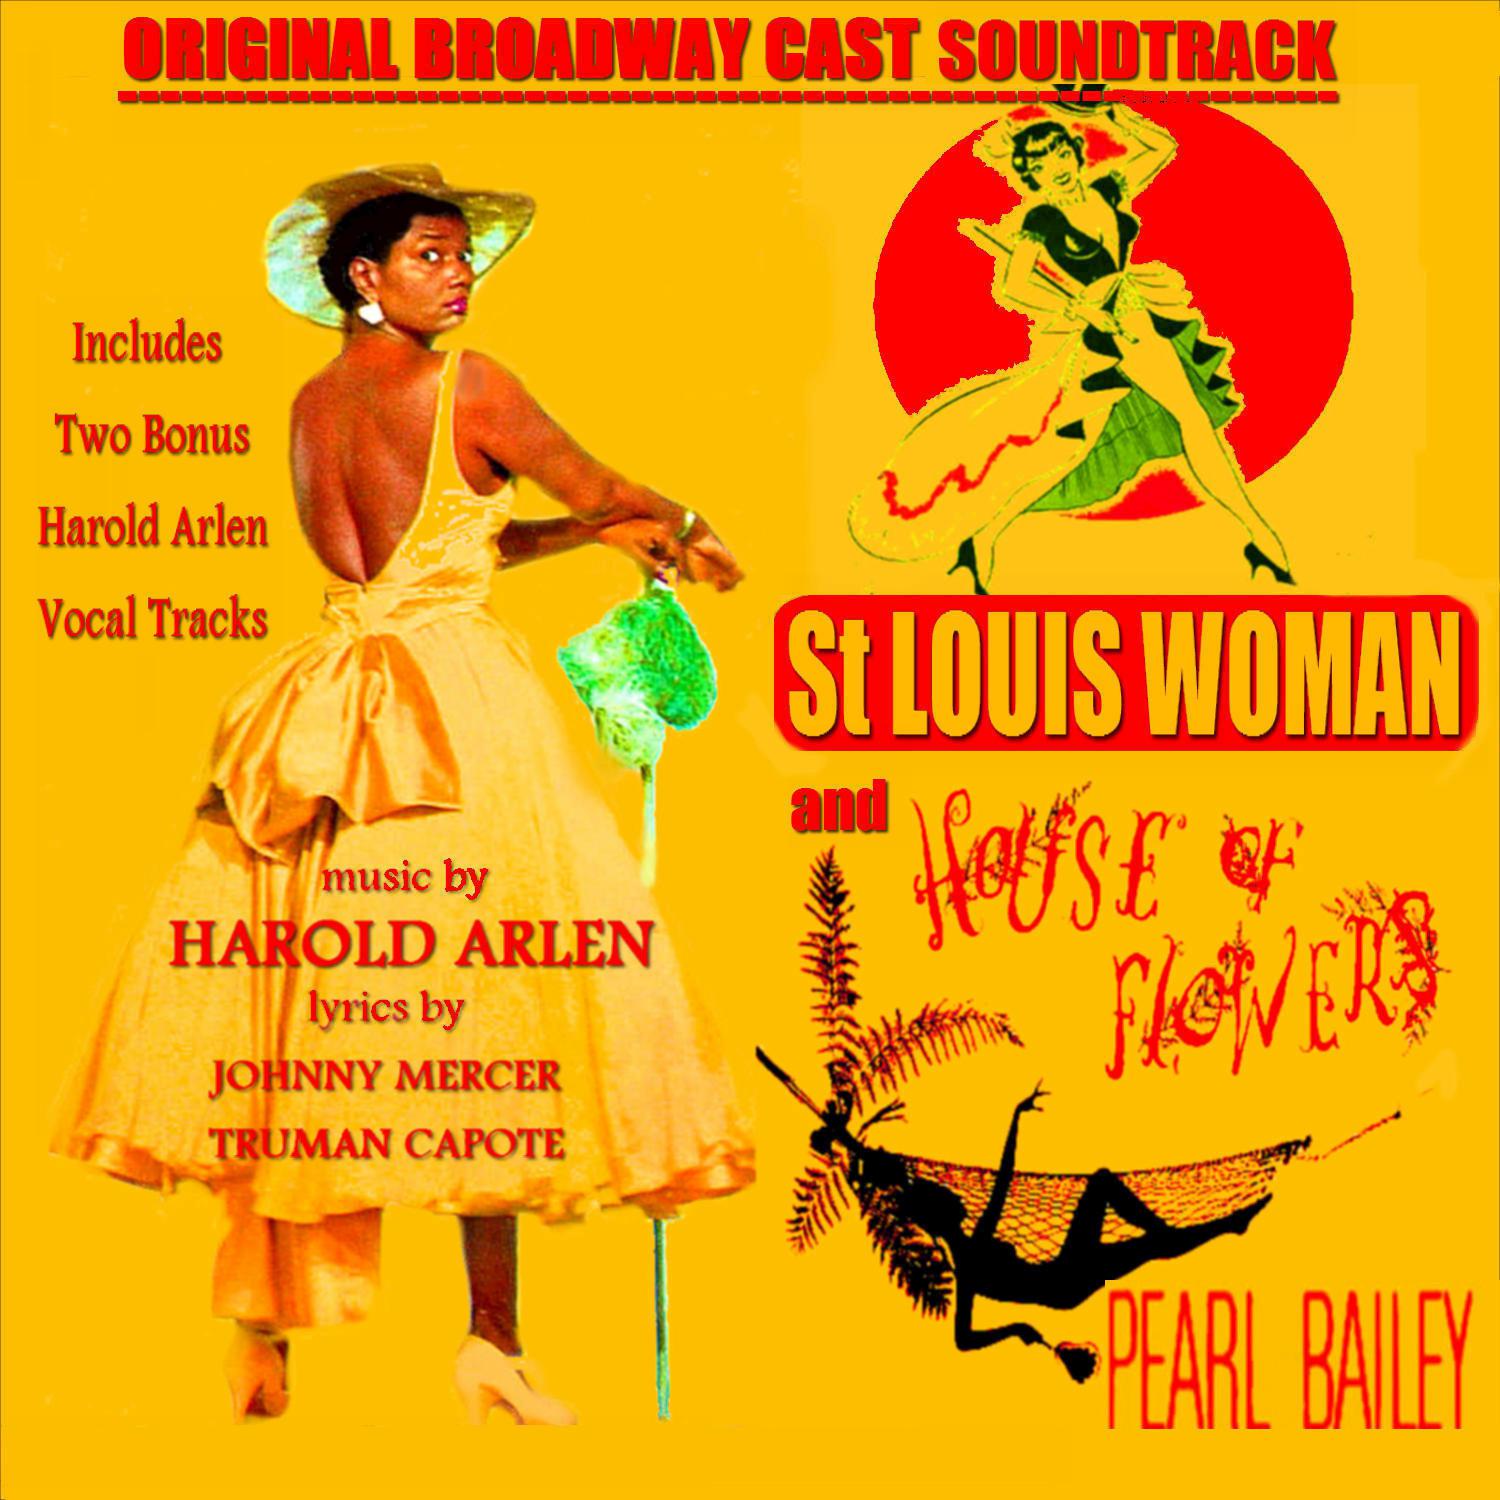 St. Louis Woman - House of Flowers (Original Broadway Cast Soundtrack)